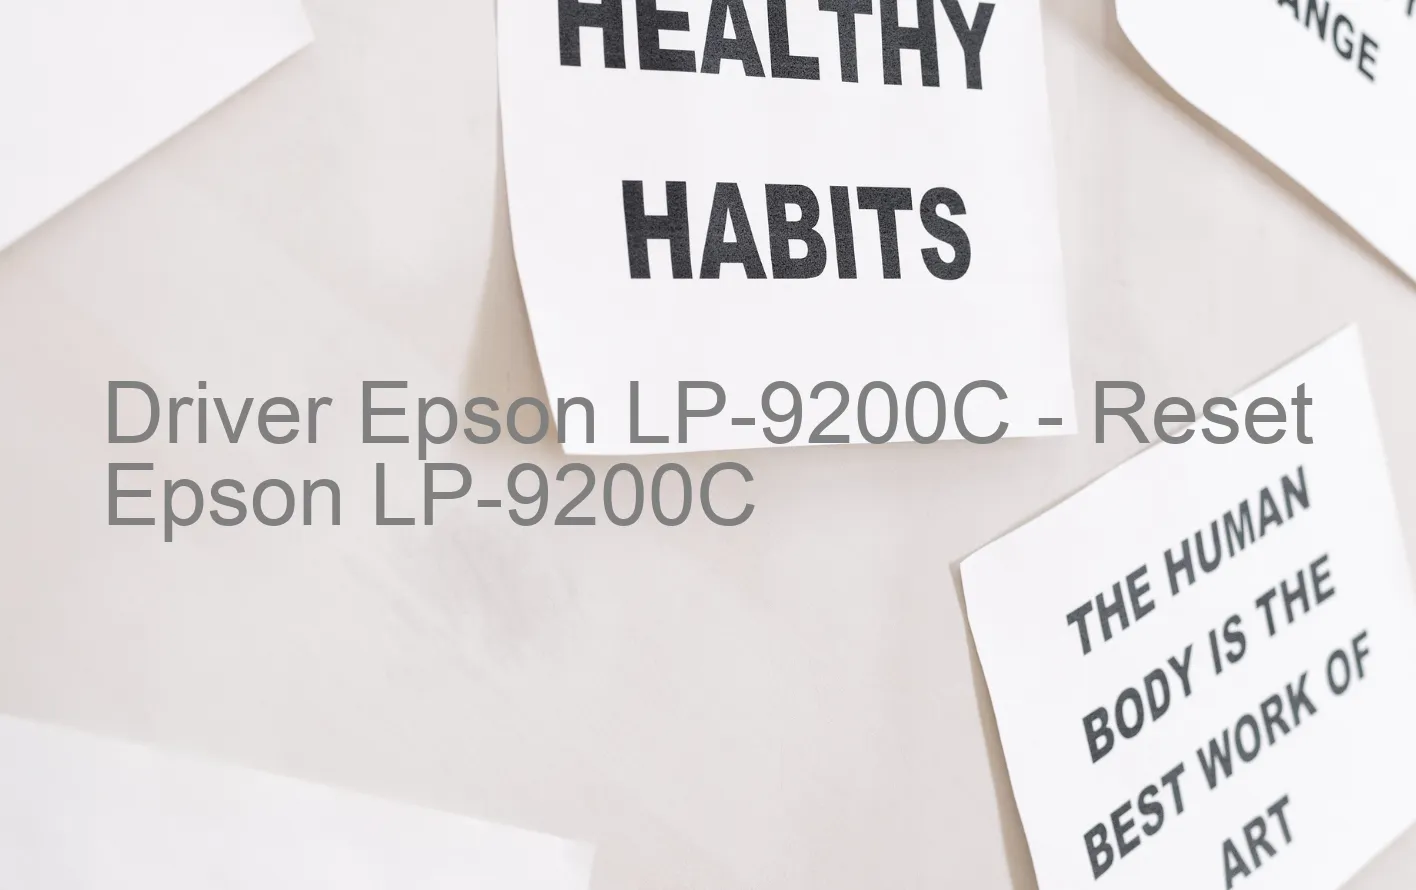 Epson LP-9200Cのドライバー、Epson LP-9200Cのリセットソフトウェア